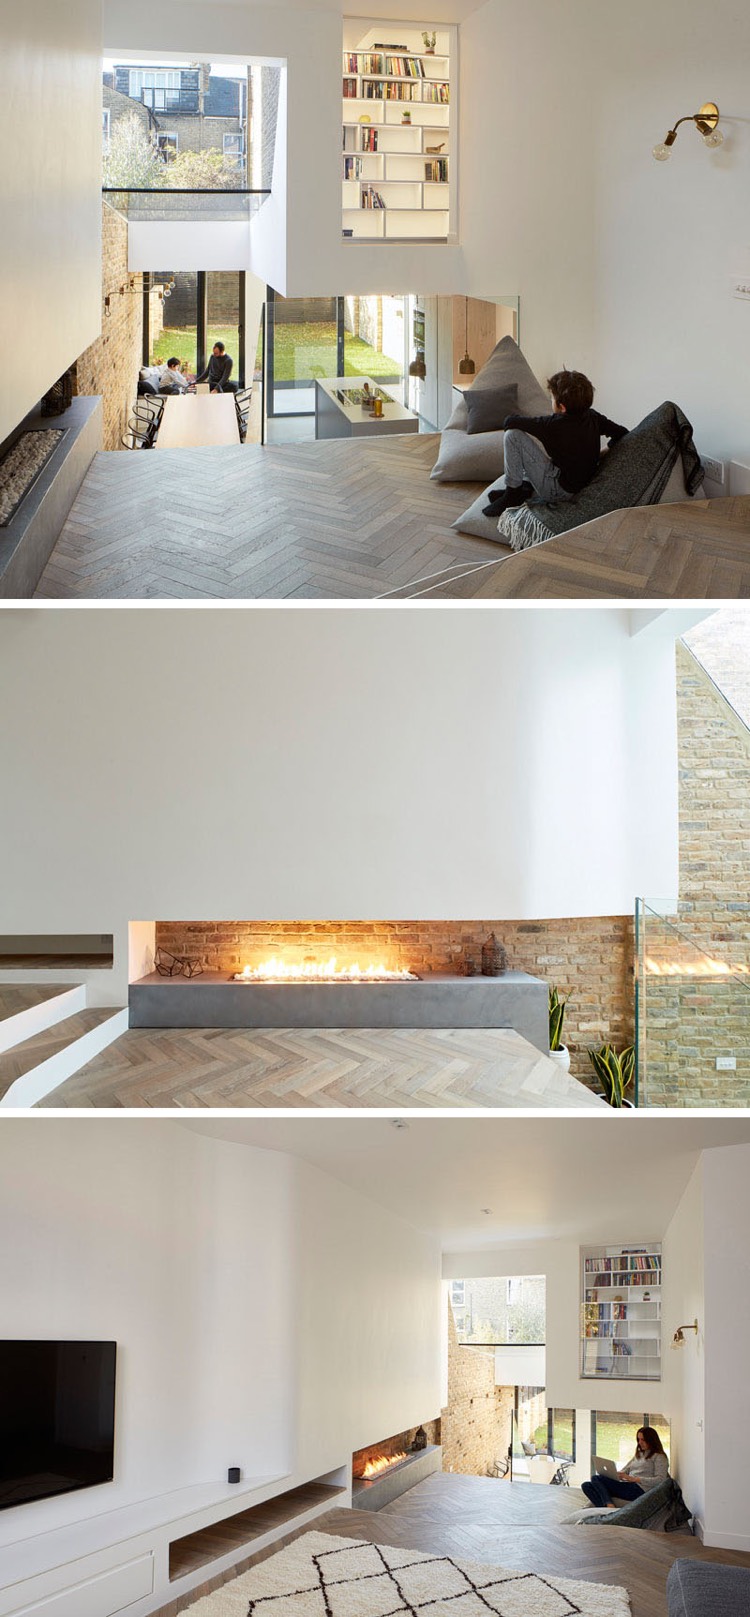 briques-de-parement-cuisine-cheminee-beton-minimaliste-parquet-coin-lounge